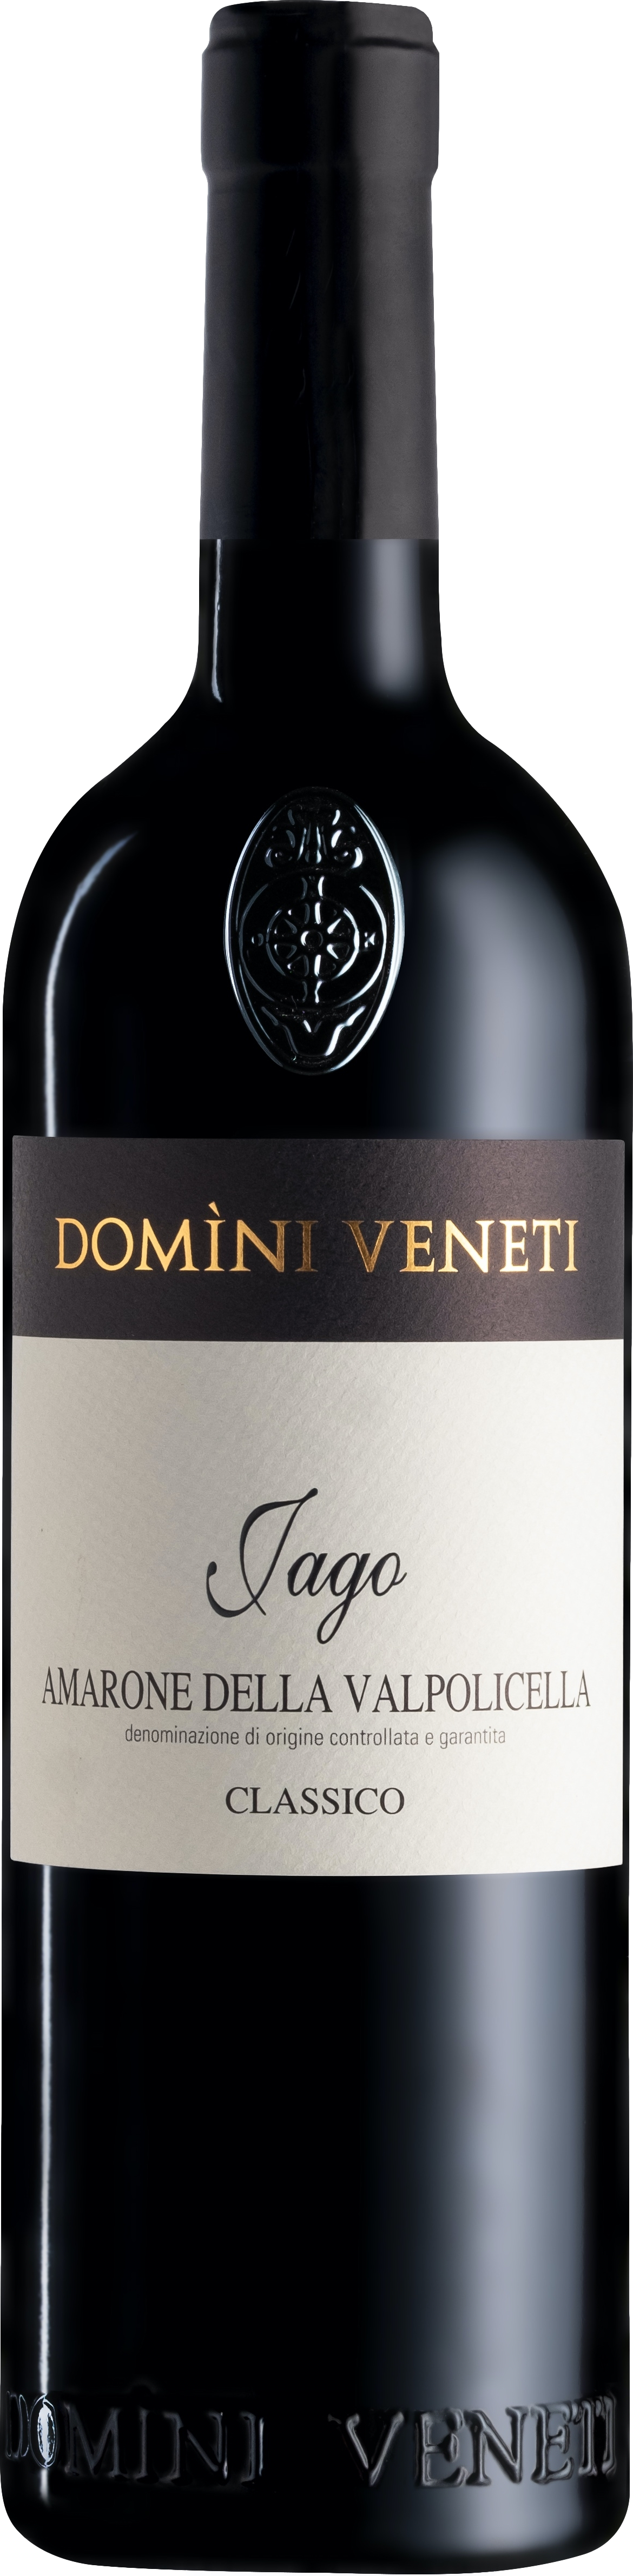 2017 günstig Kaufen-Domini Veneti Vigneti di Jago Amarone della Valpolicella Classico 2017. Domini Veneti Vigneti di Jago Amarone della Valpolicella Classico 2017 . 